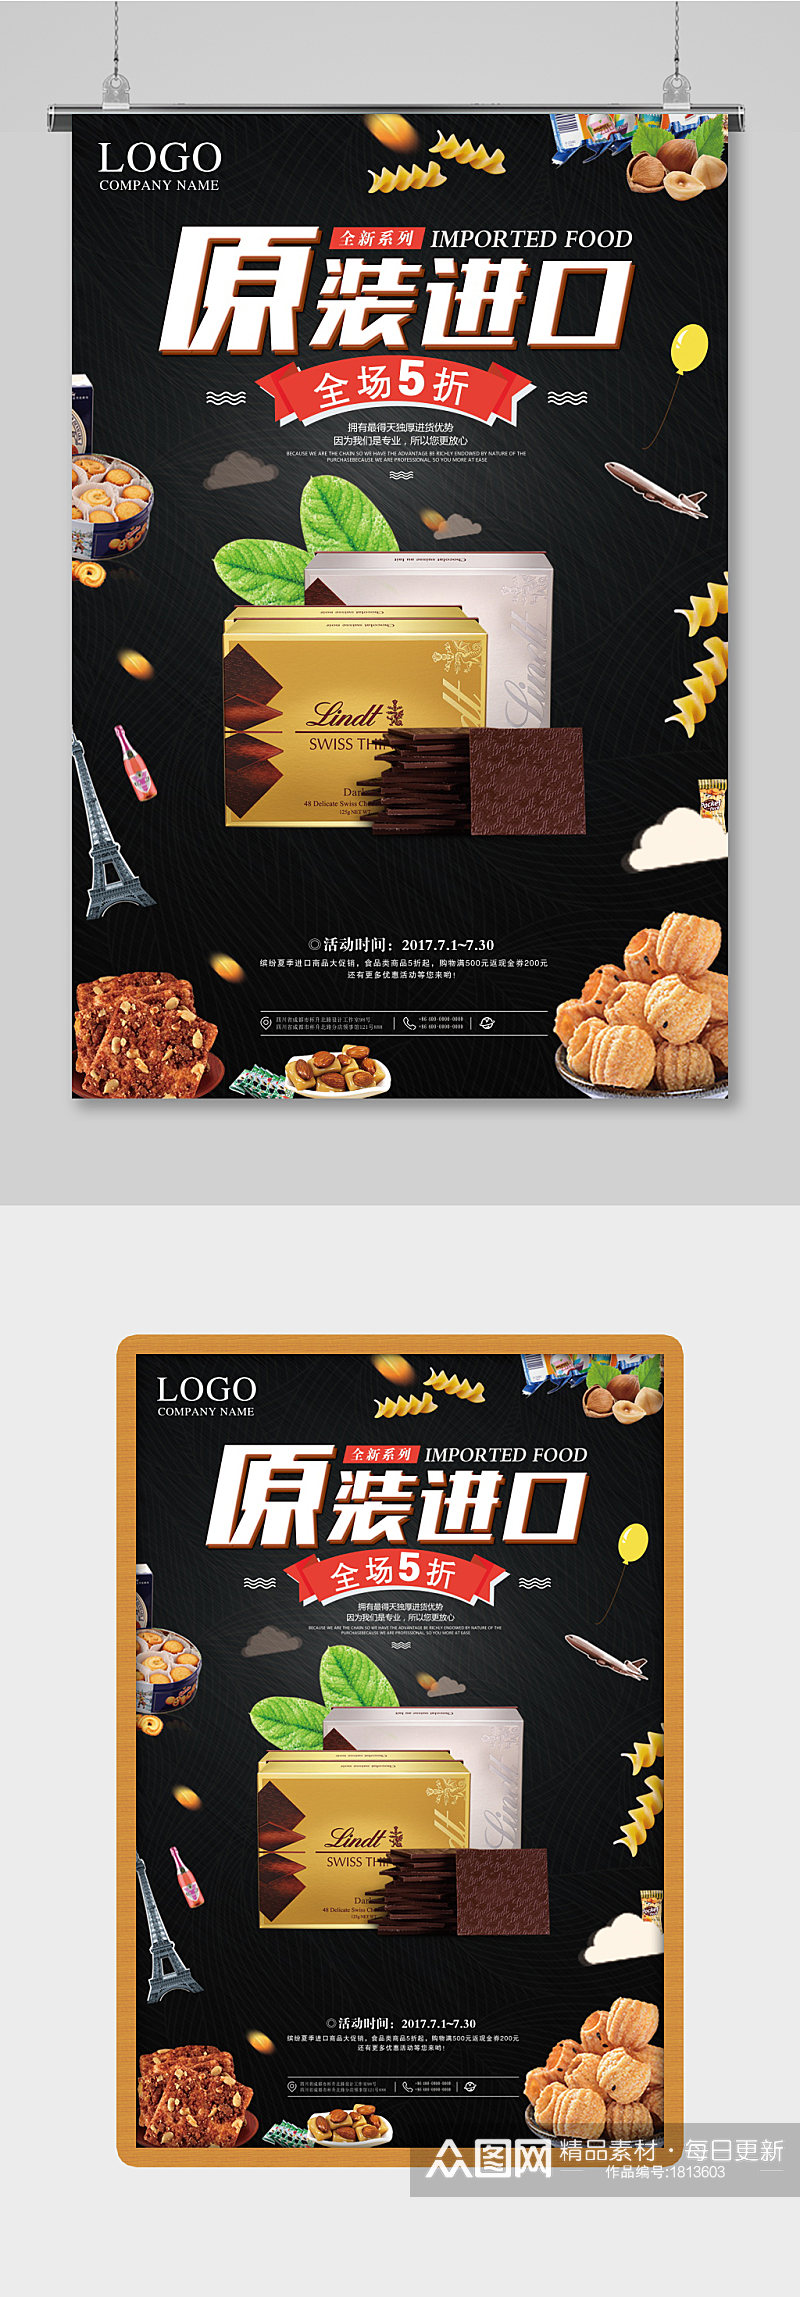 极简创意版式进口食品巧克力美食海报素材